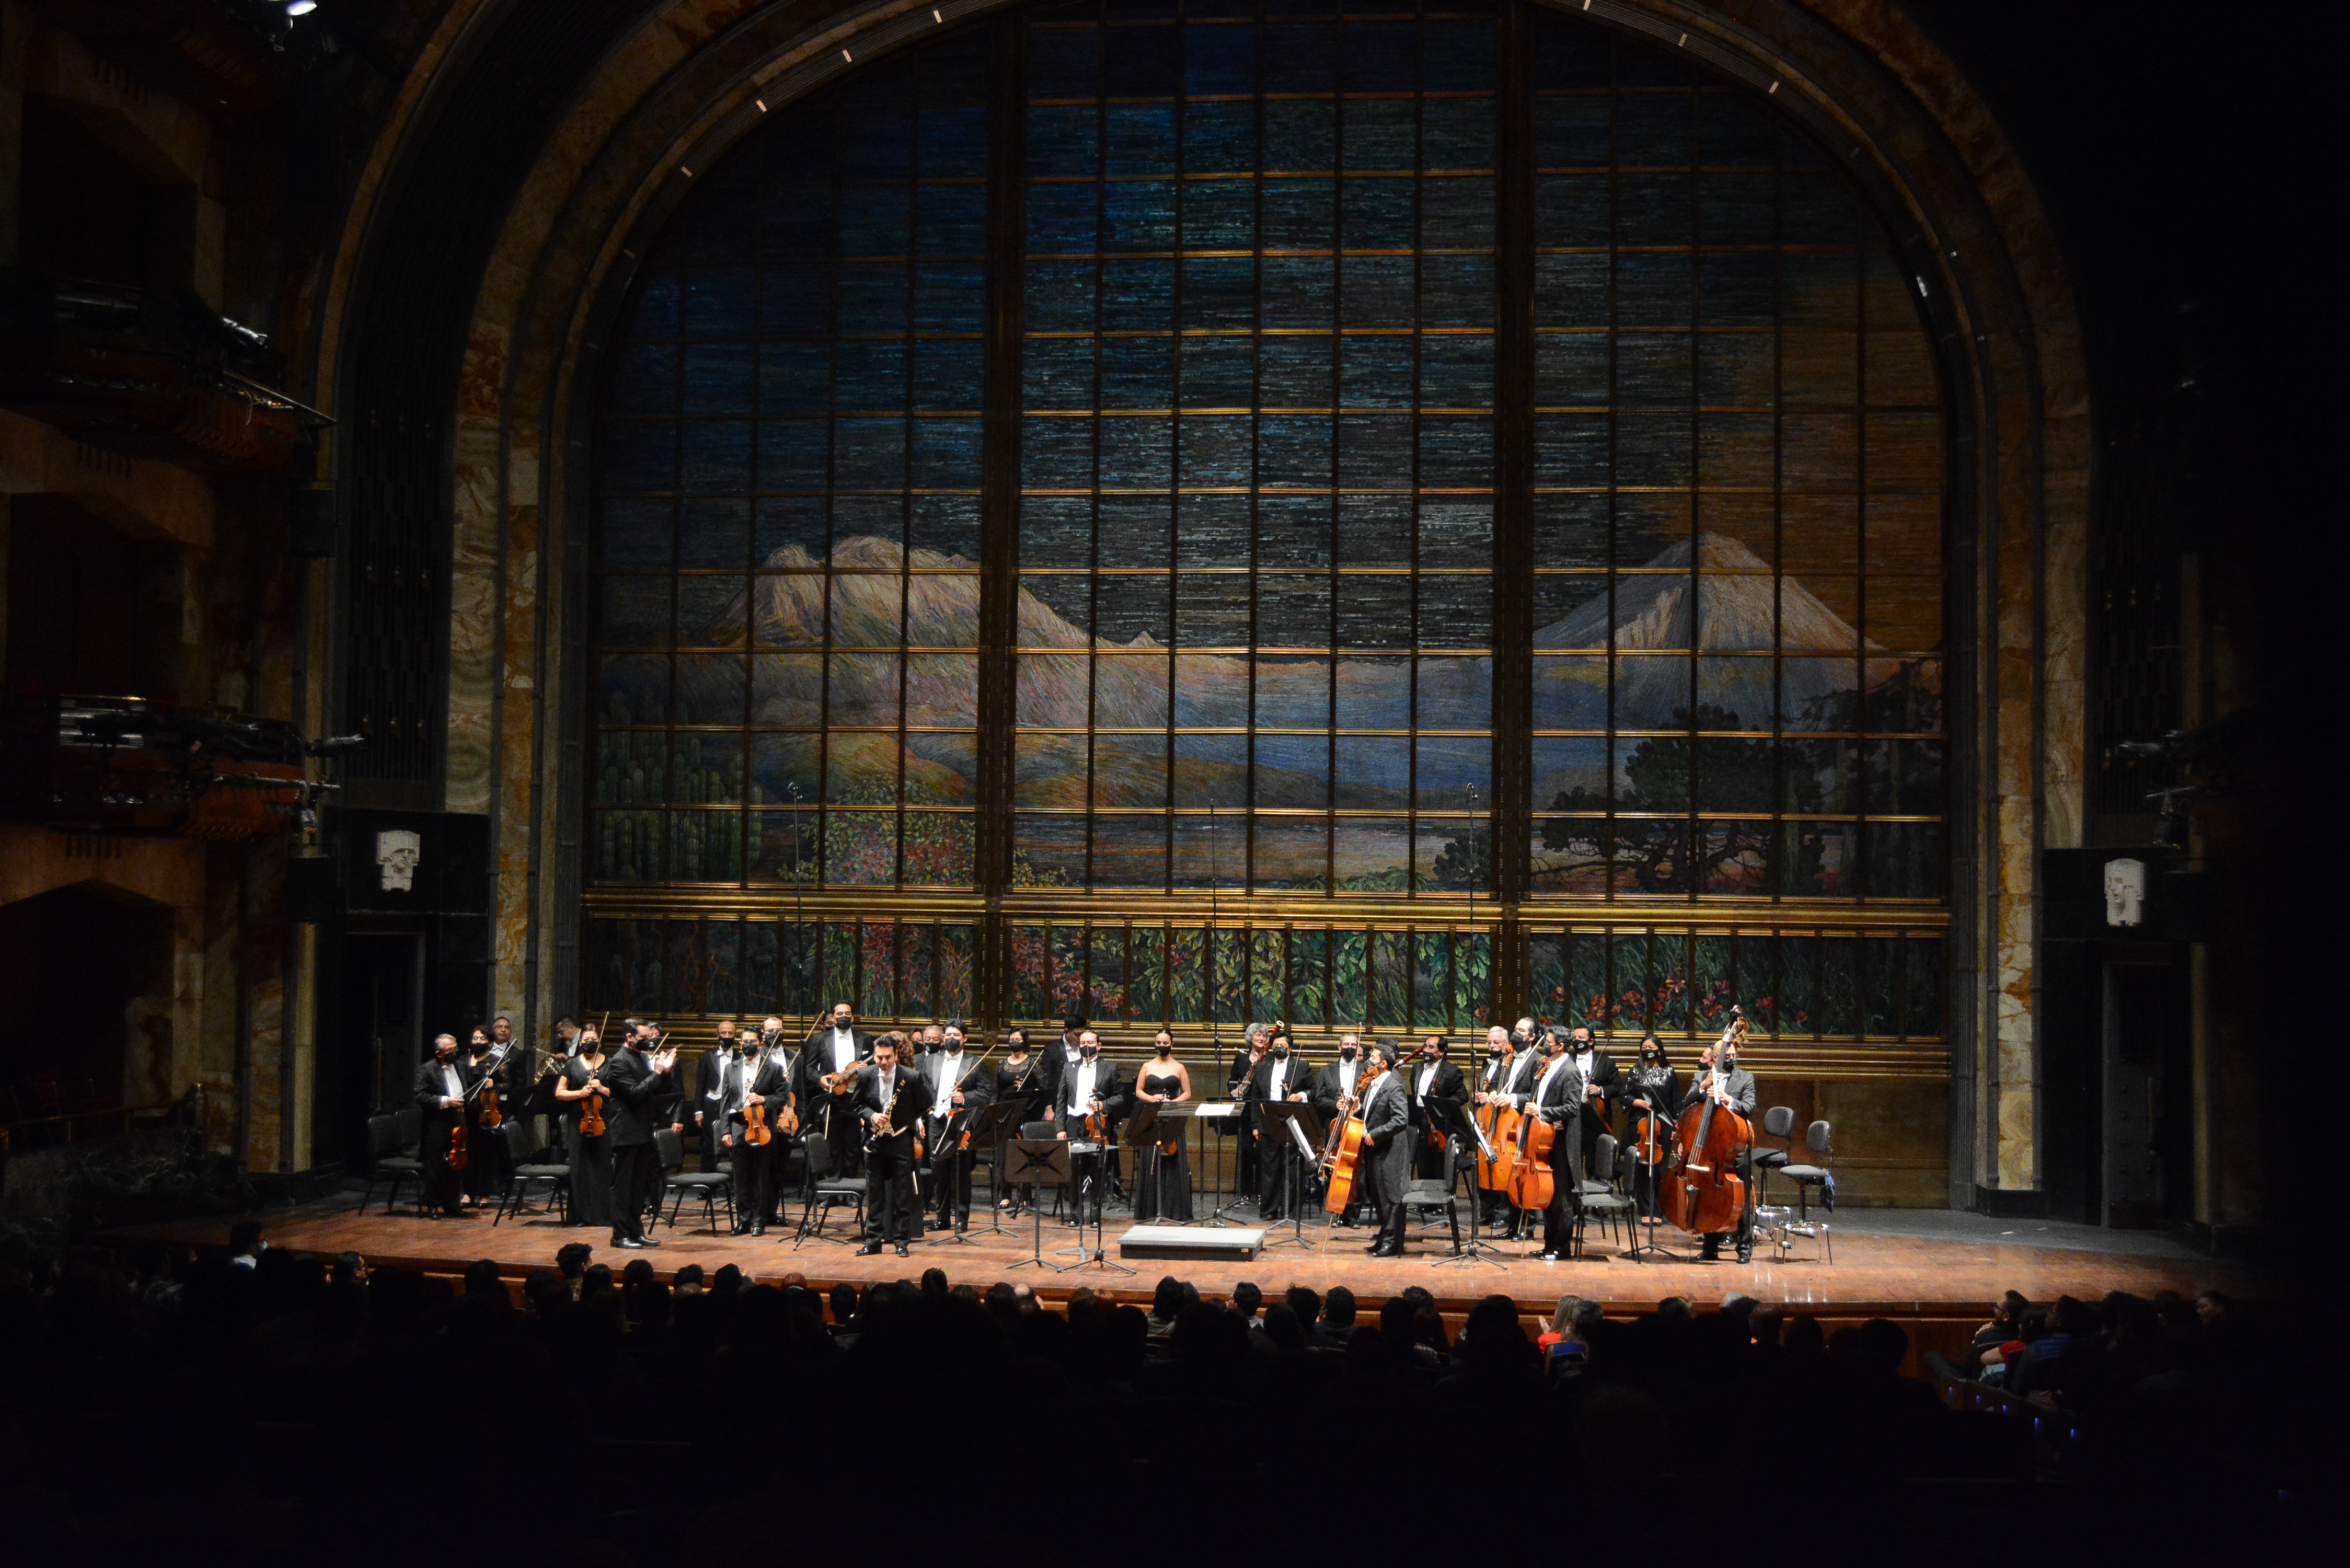 <p><strong>Interpreta la Orquesta Sinfónica Nacional obras de carácter festivo </strong><strong>y marcial en el Palacio de Bellas Artes</strong></p>
